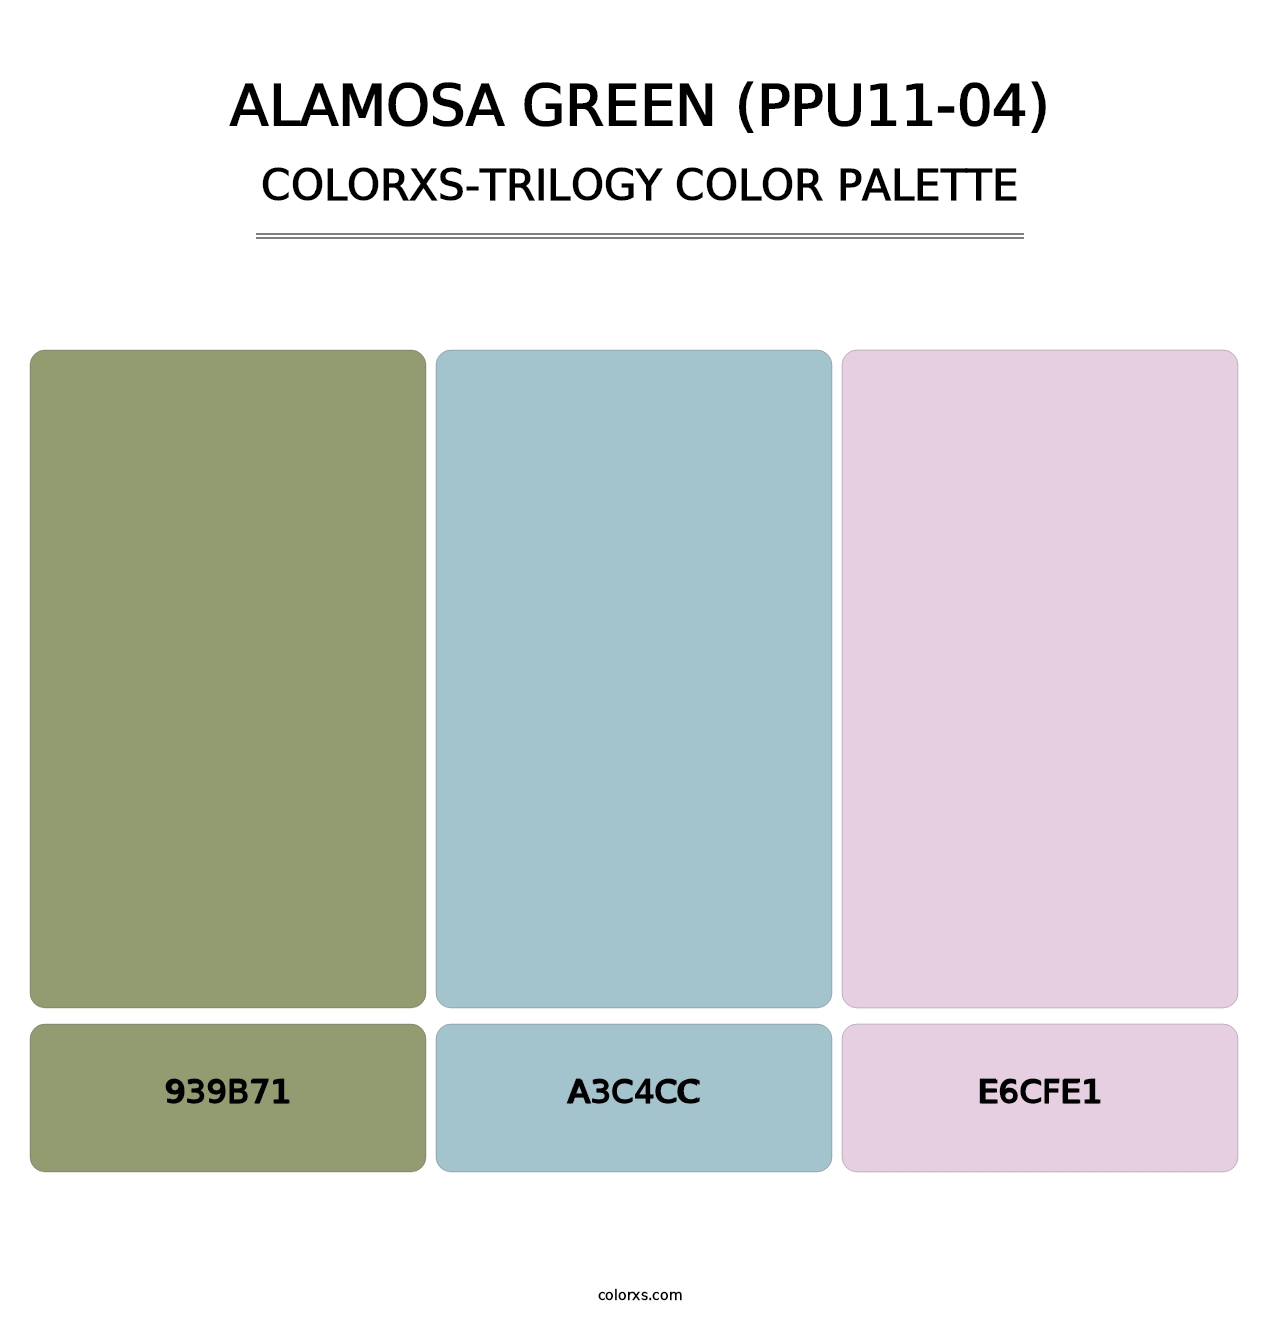 Alamosa Green (PPU11-04) - Colorxs Trilogy Palette